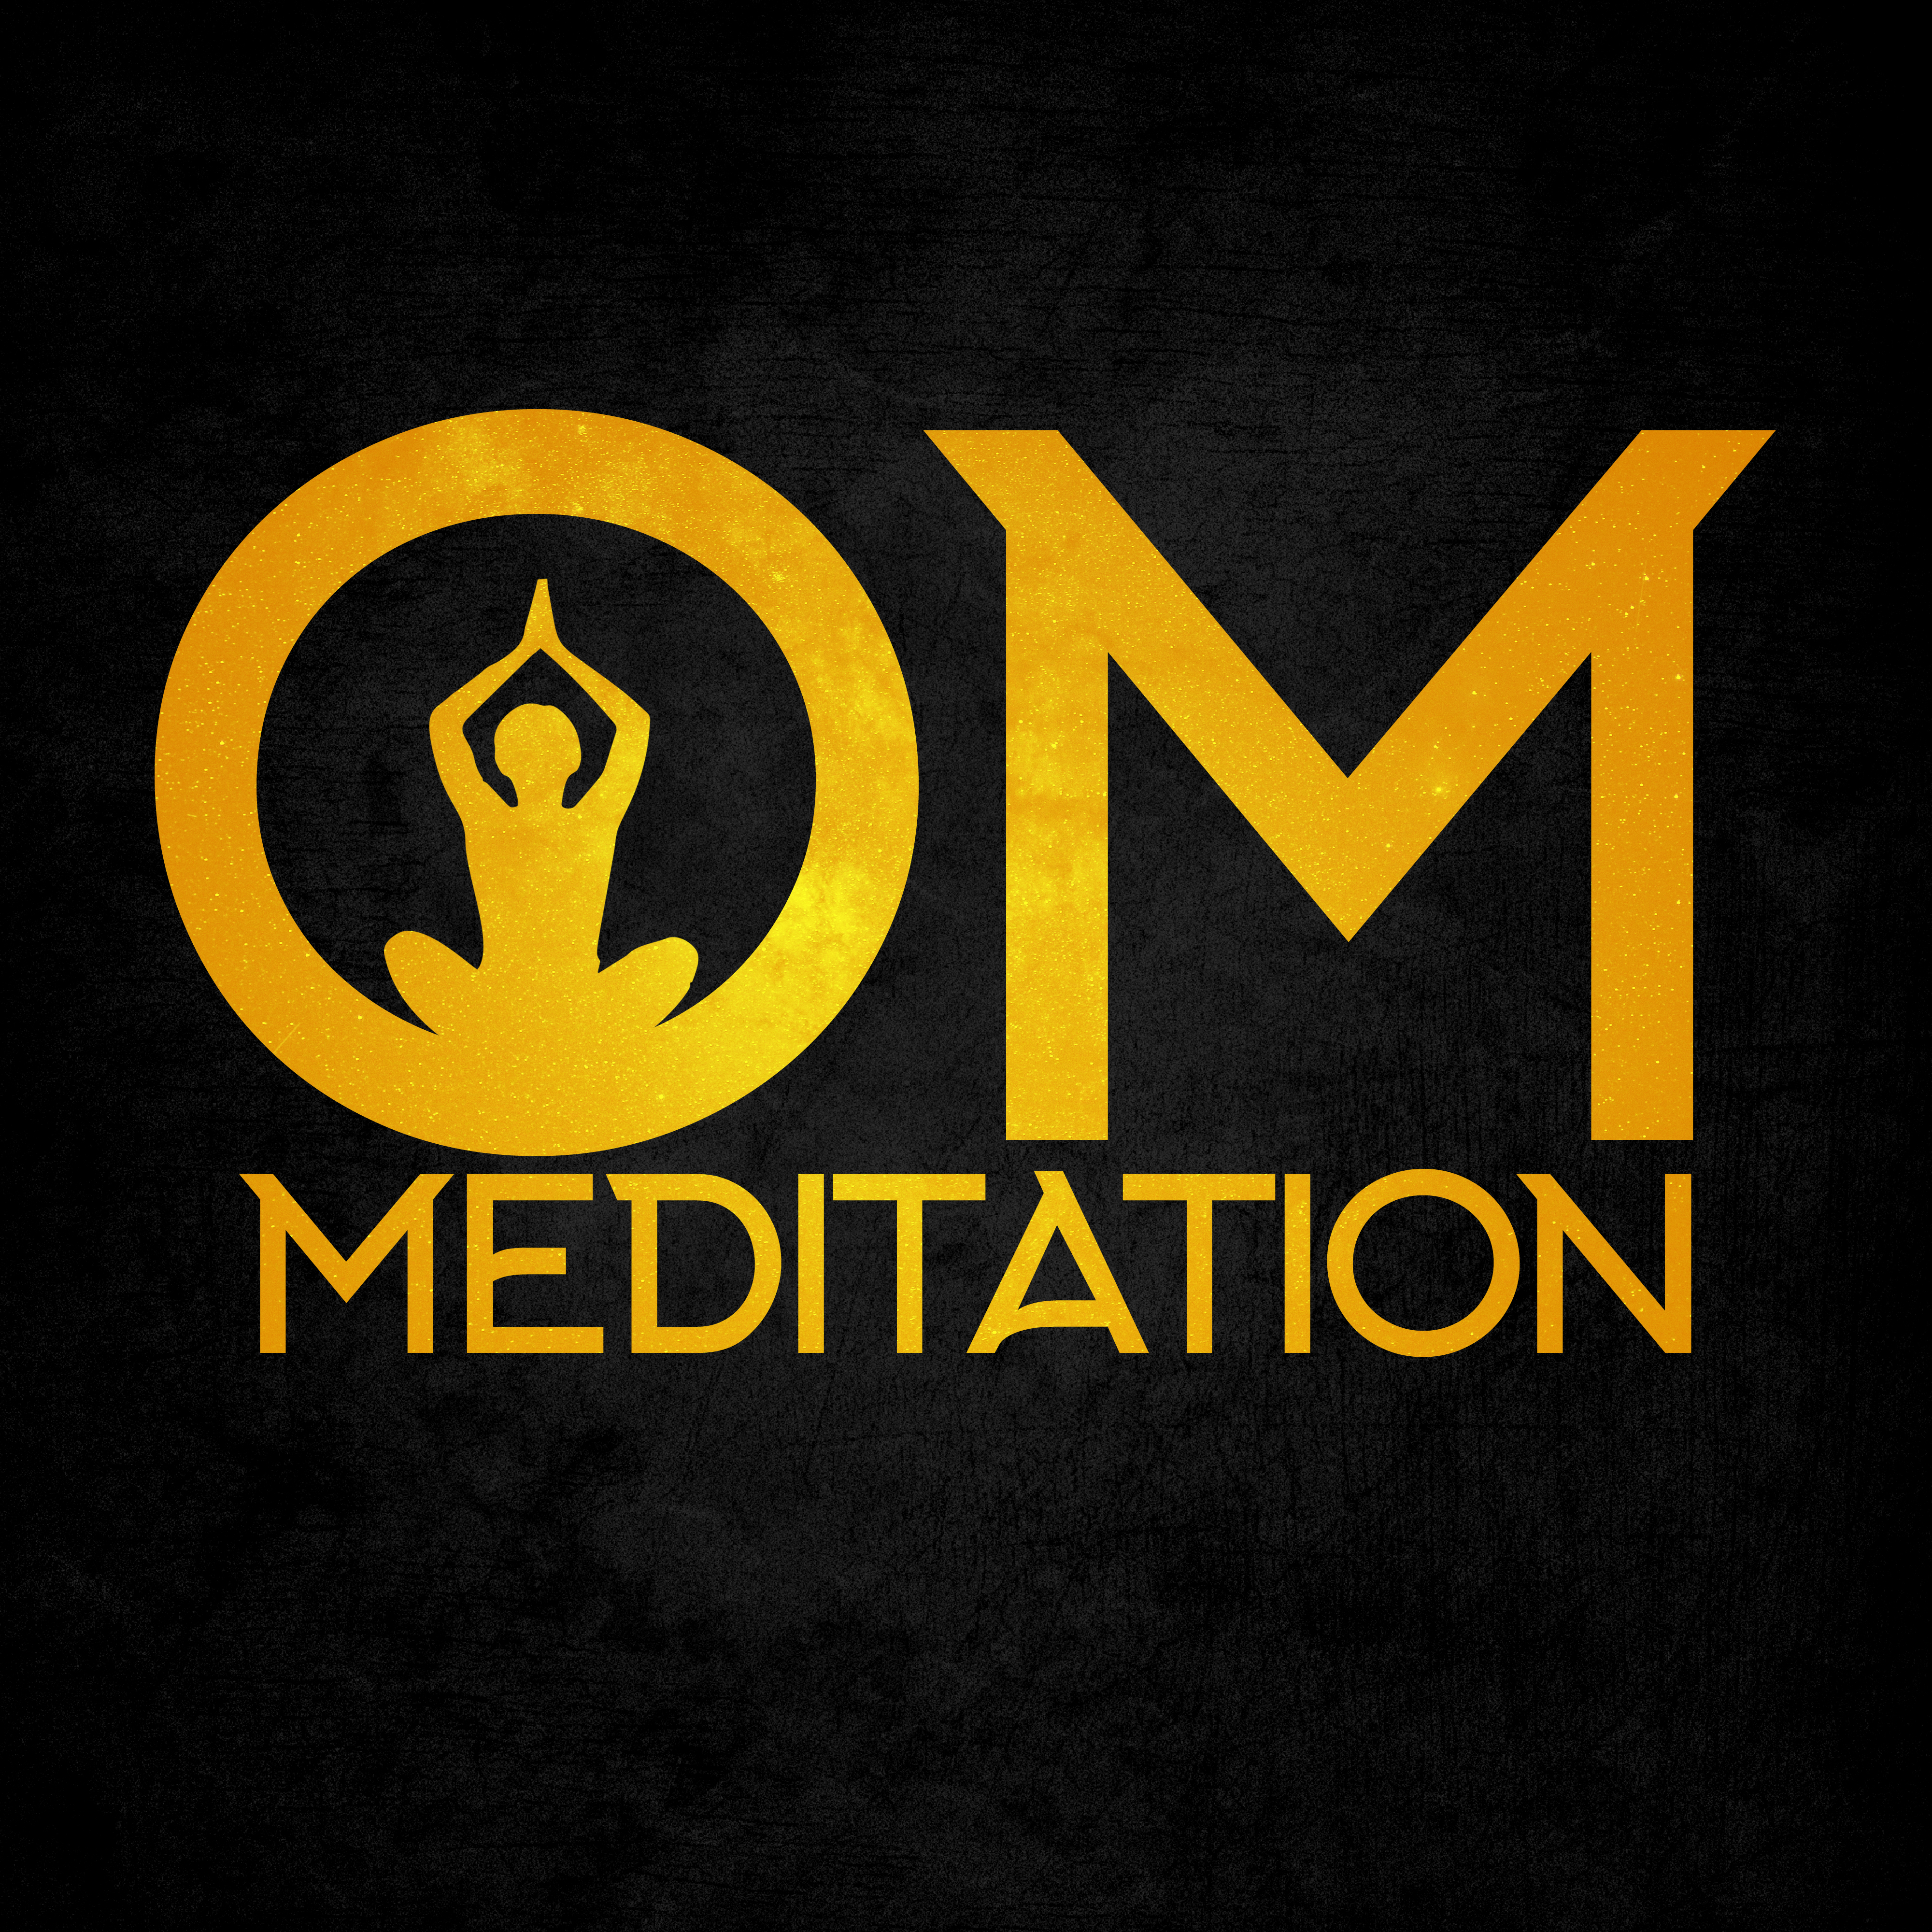 OM Meditation